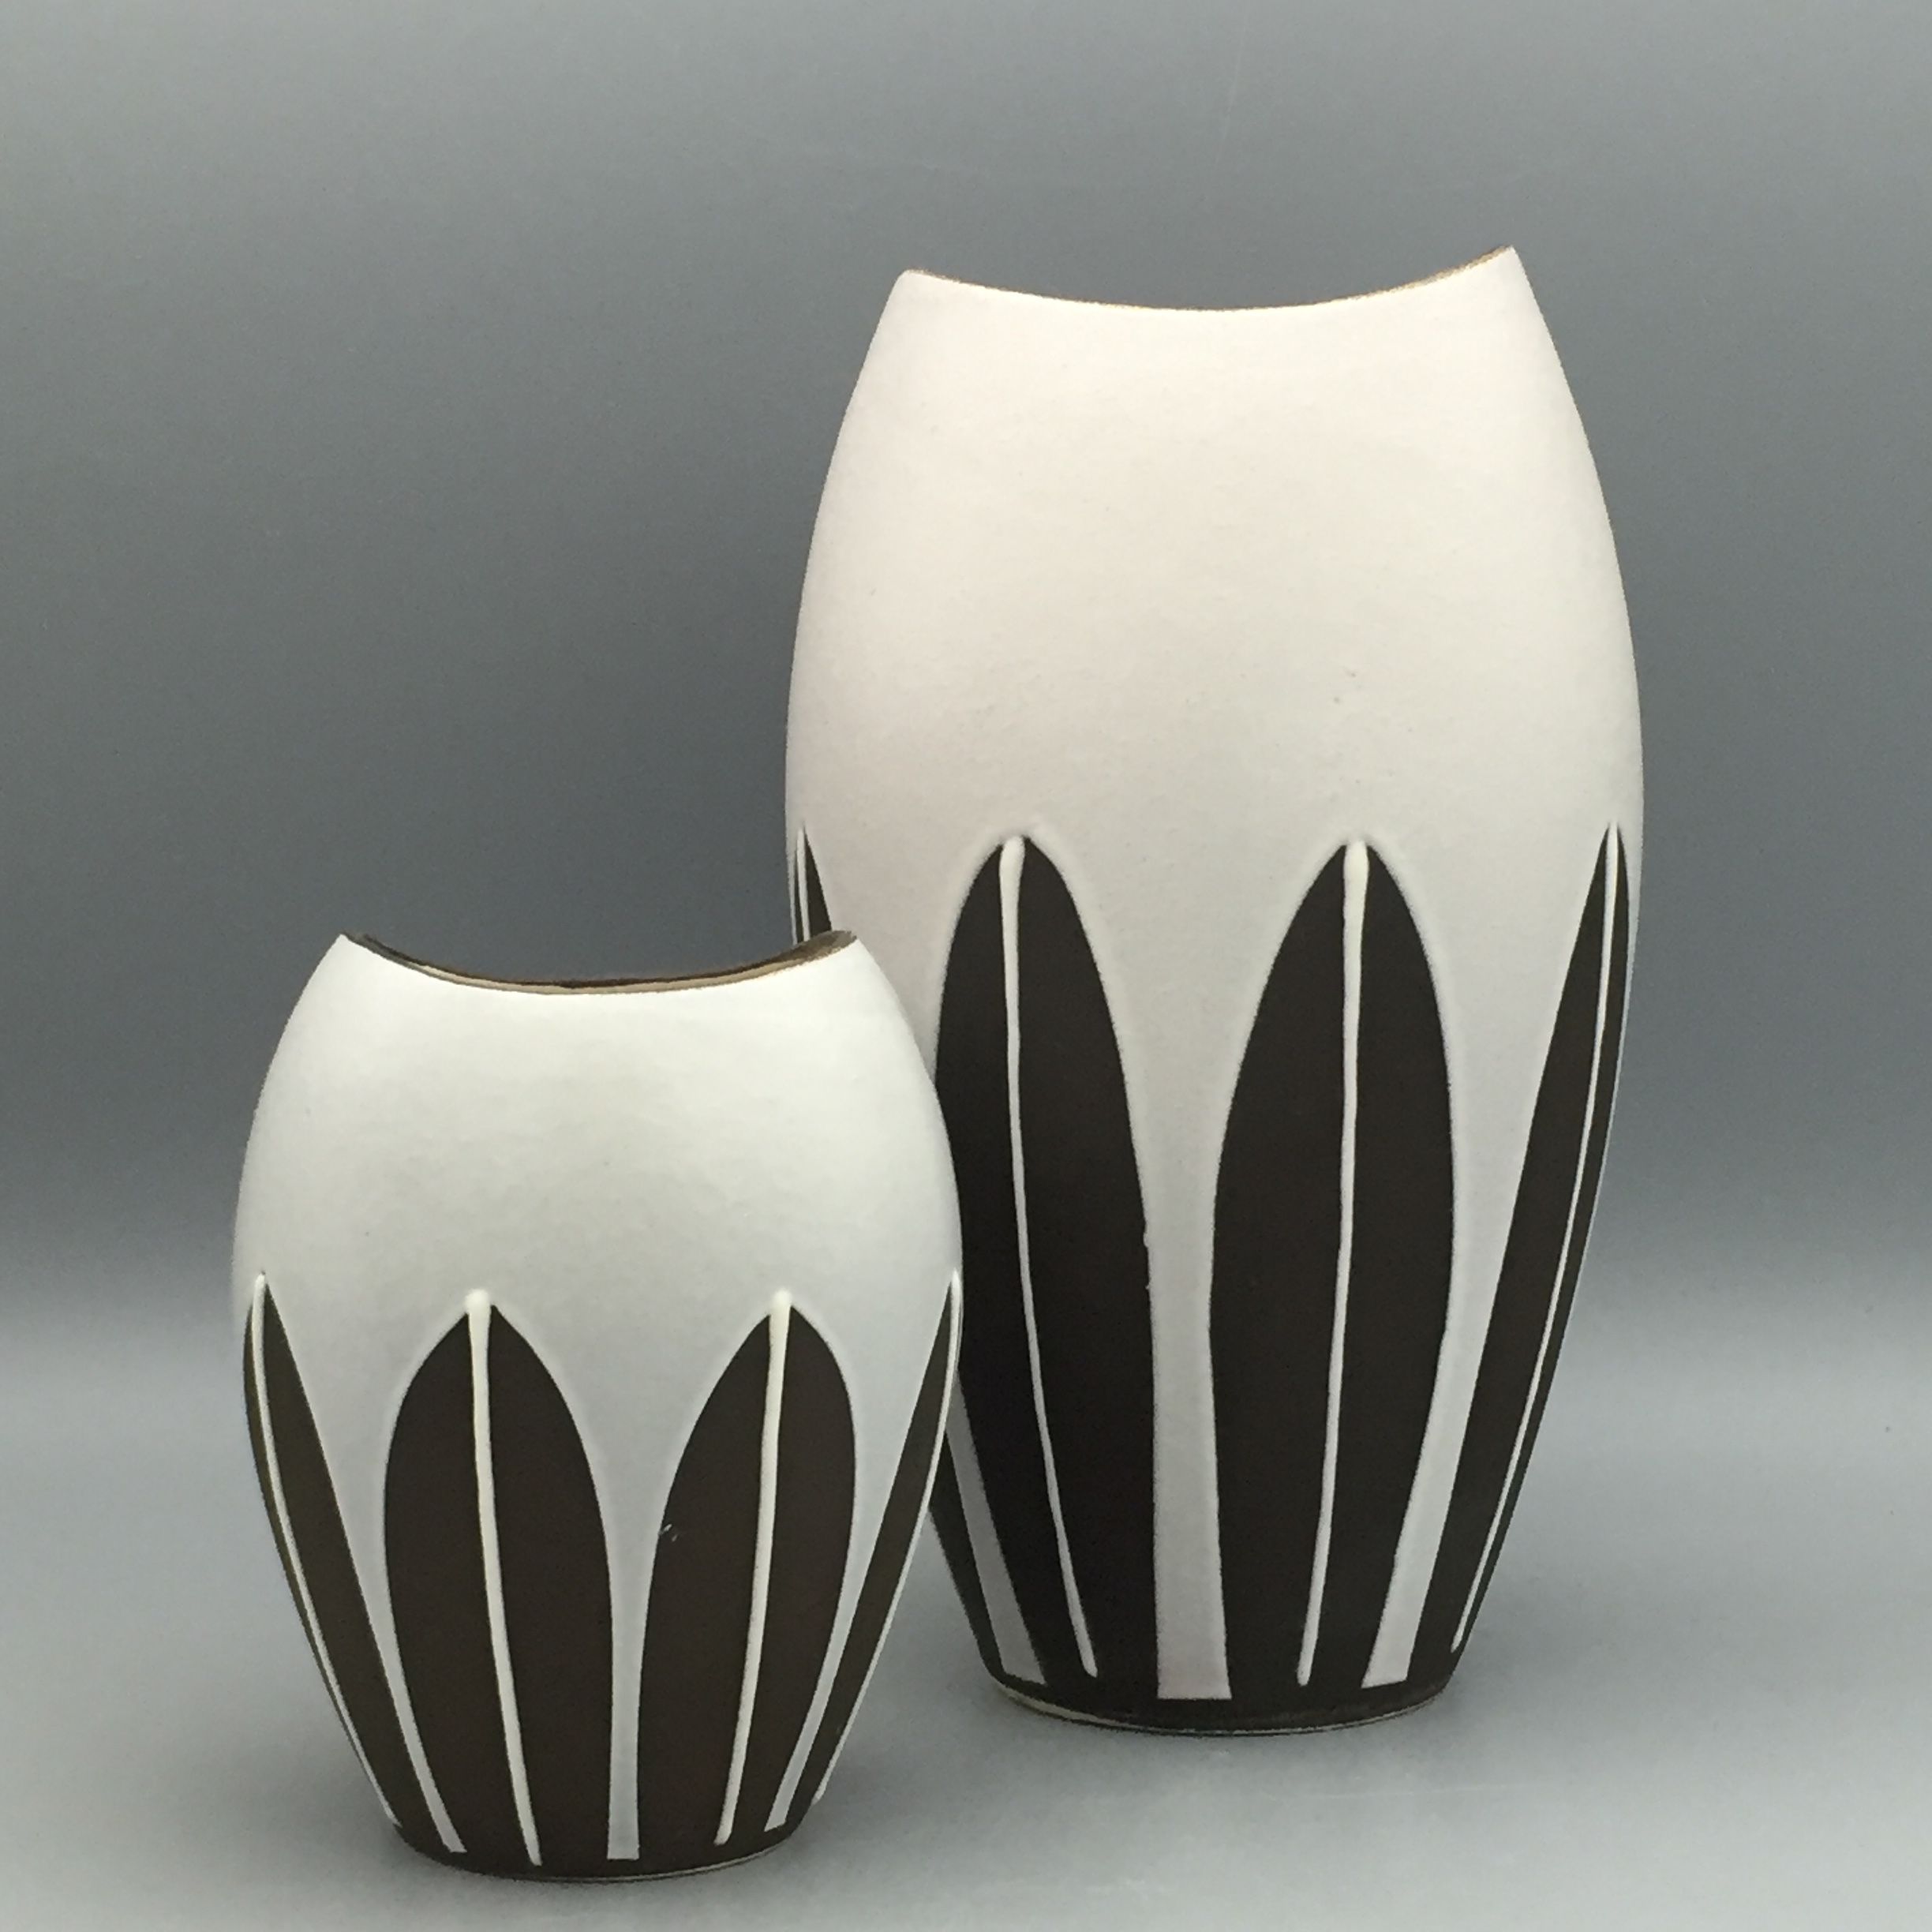 Jarrones Ceramicos Black and White